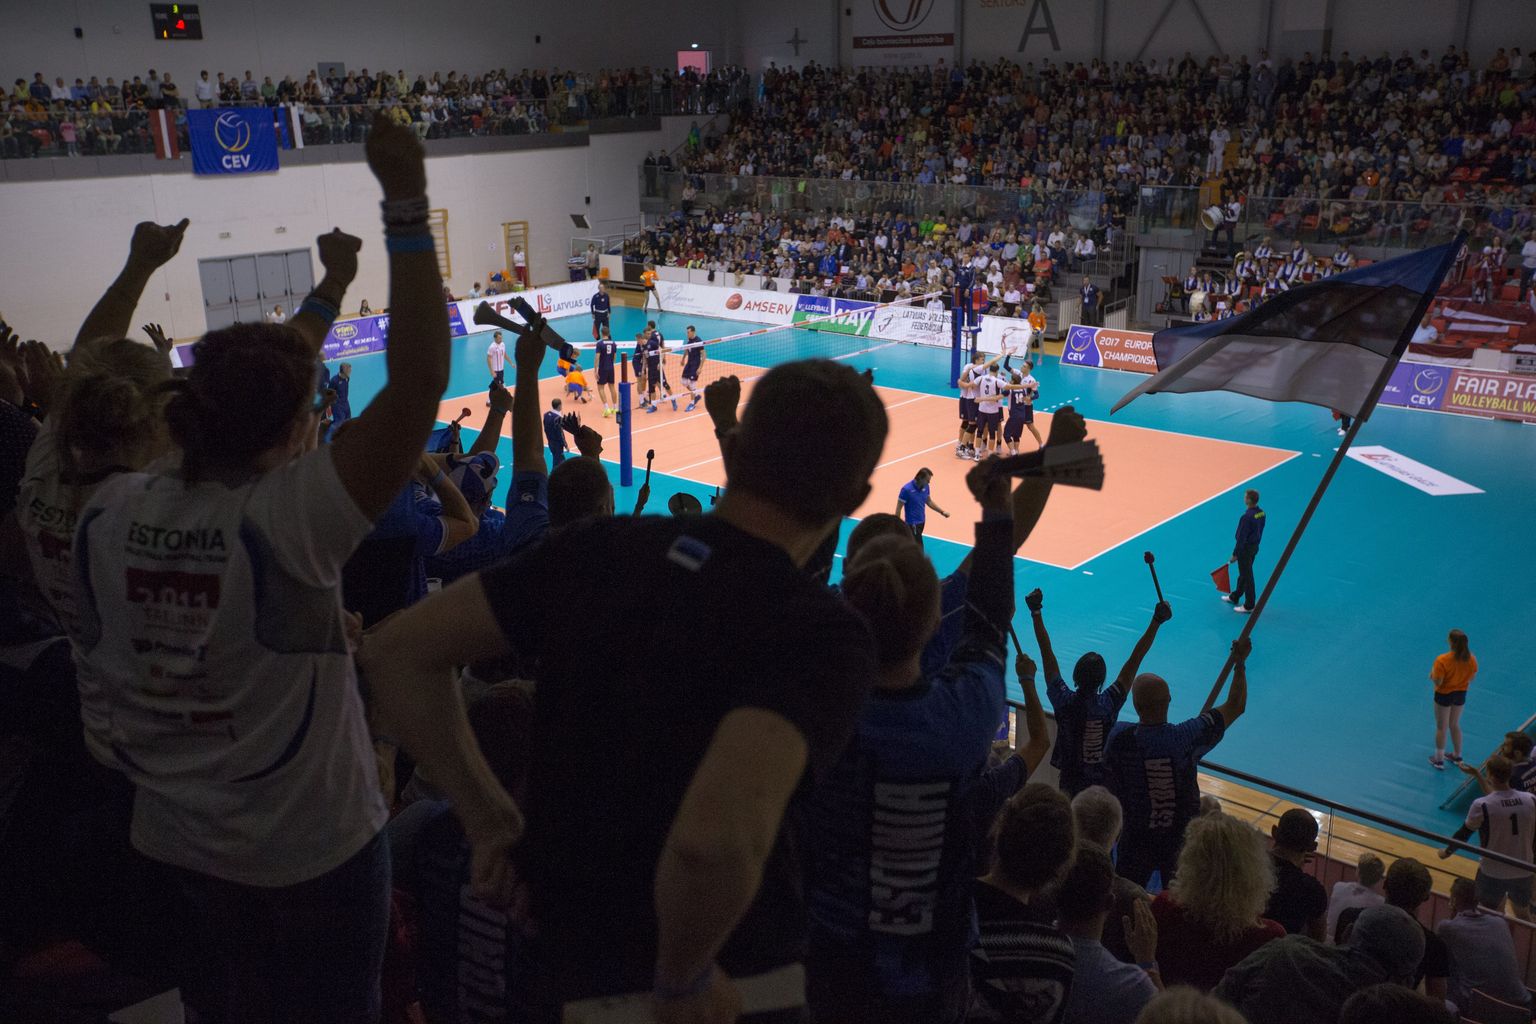 Jelgavasse oli Eesti koondist toetama sõitnud ka umbes 400-pealine toetajaskond. Mängijad loodavad palju fännide toele otsustavas kohtumises Tondiraba hallis.